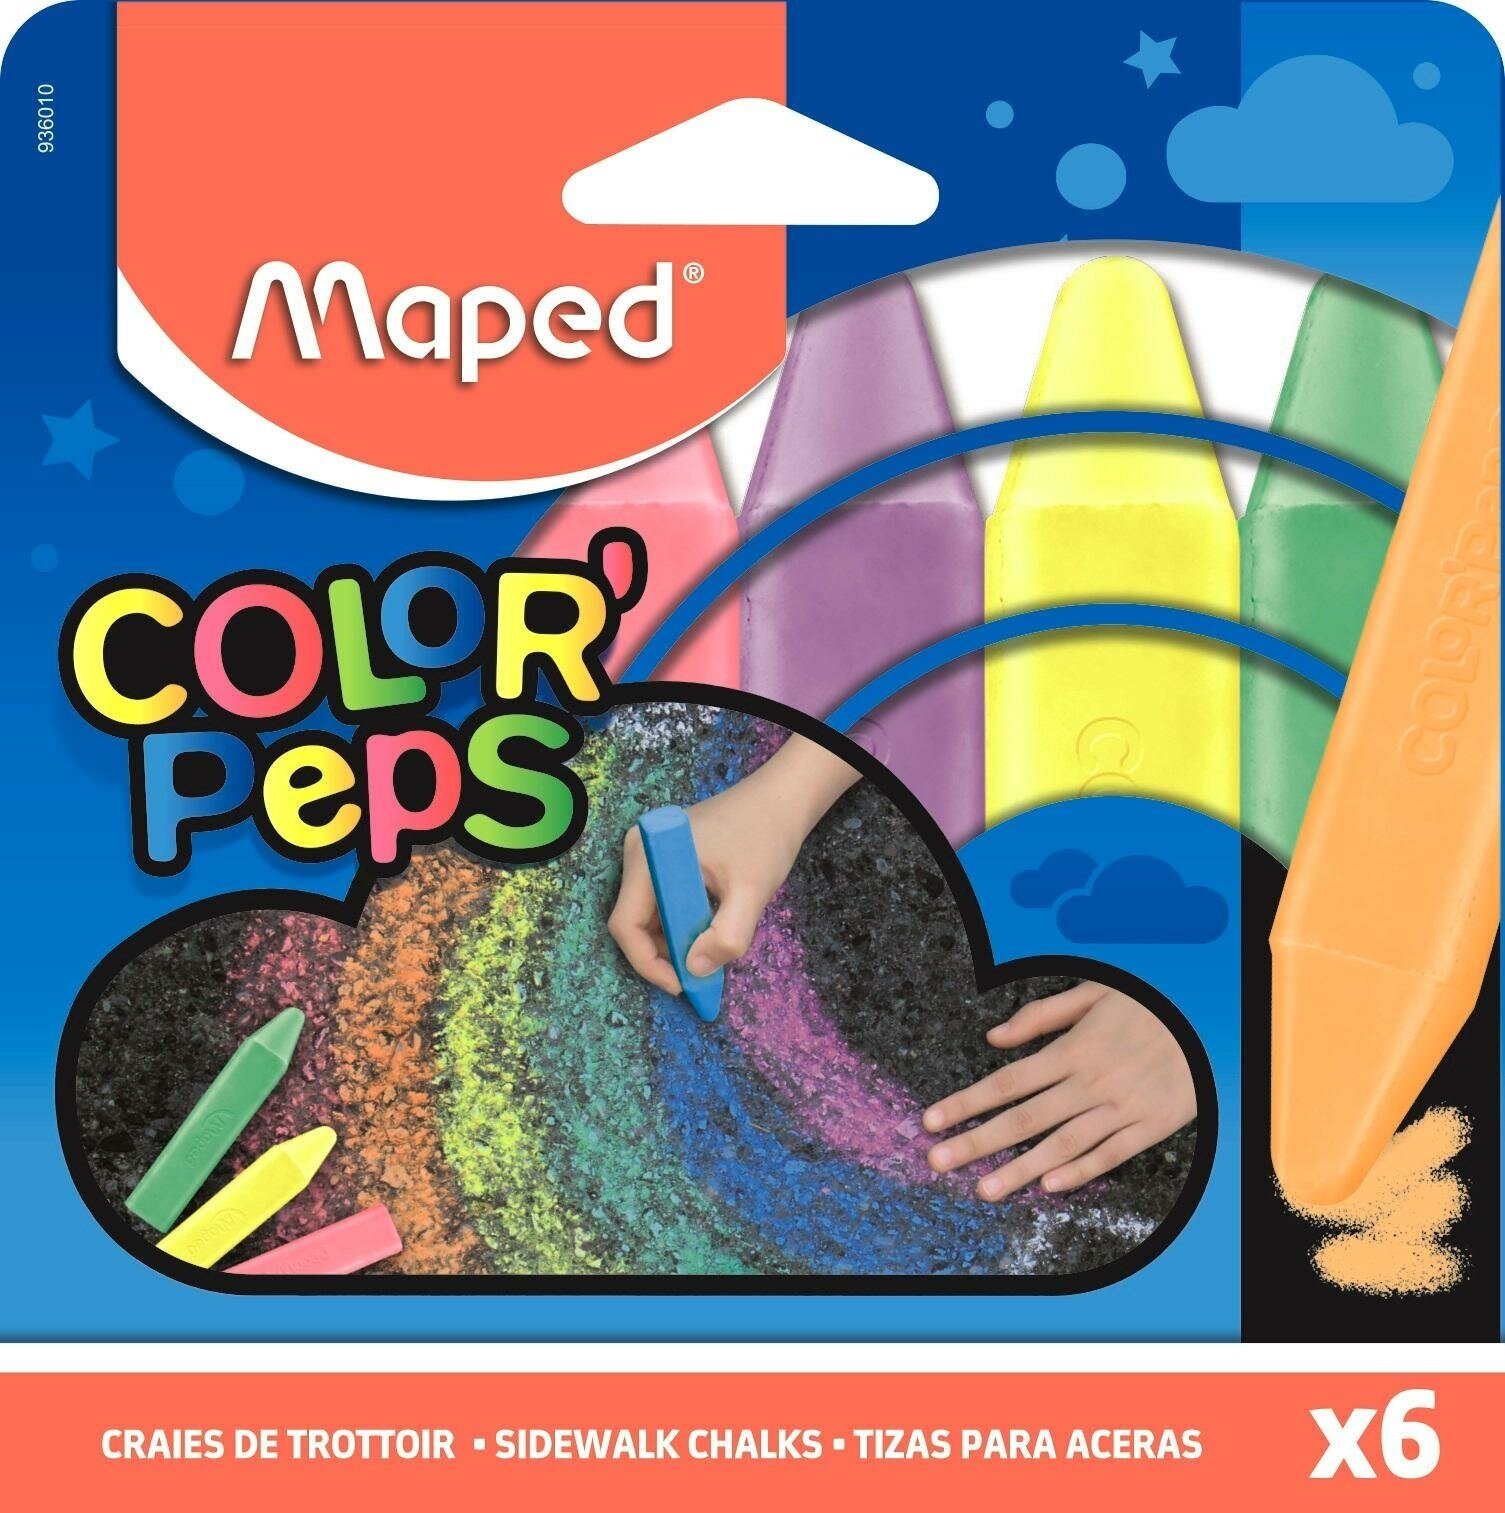 Мел для асфальта Maped COLOR'PEPS цветной, прямоугольной, 6цв/наб,936010